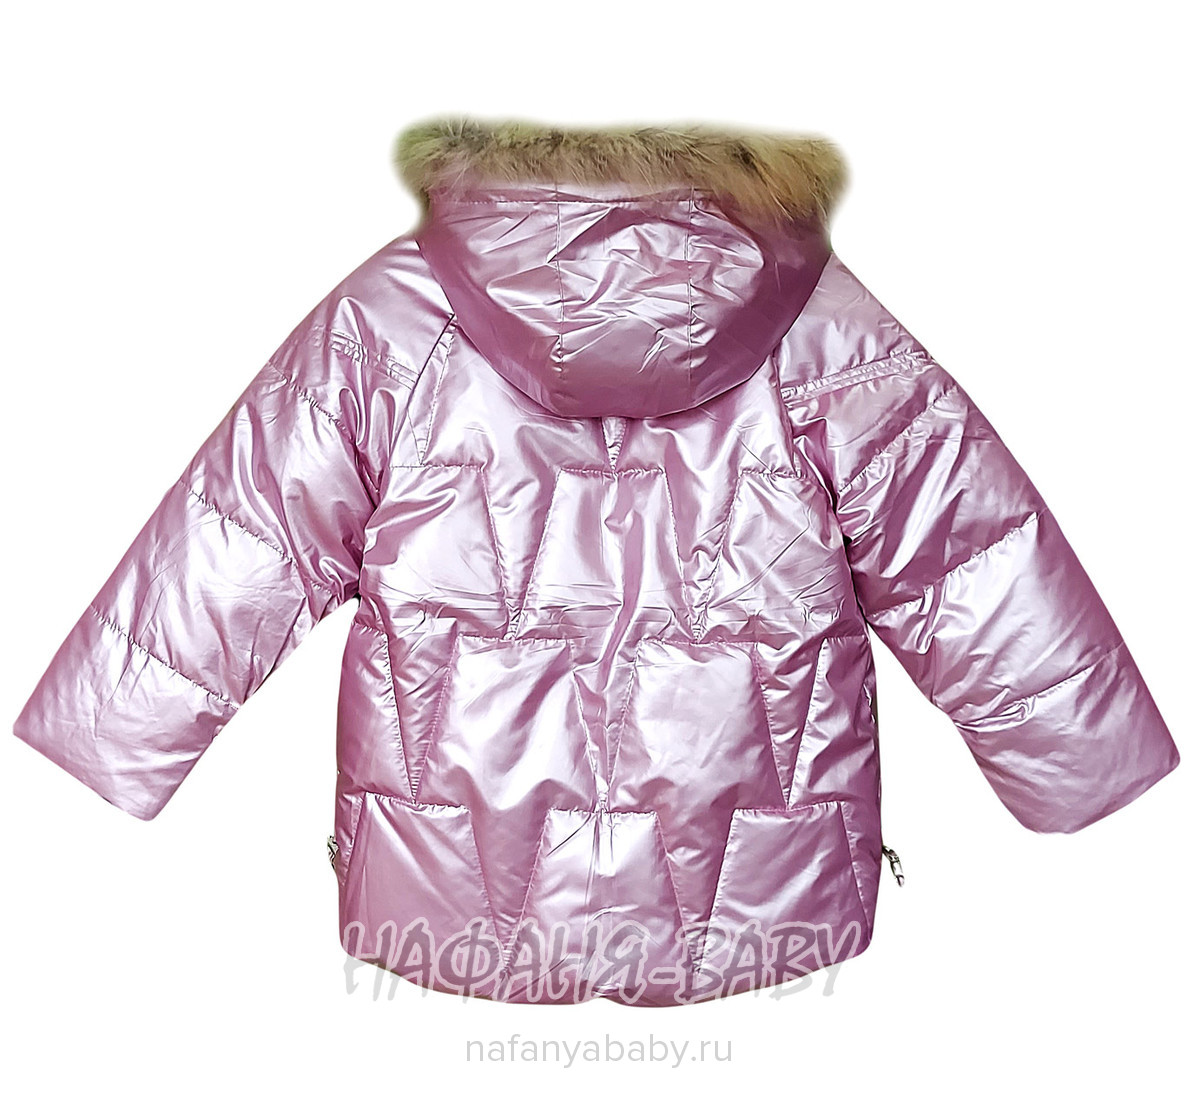 Зимняя куртка  YOI LI арт: 226, 1-4 года, 5-9 лет, цвет розовый, оптом Китай (Пекин)